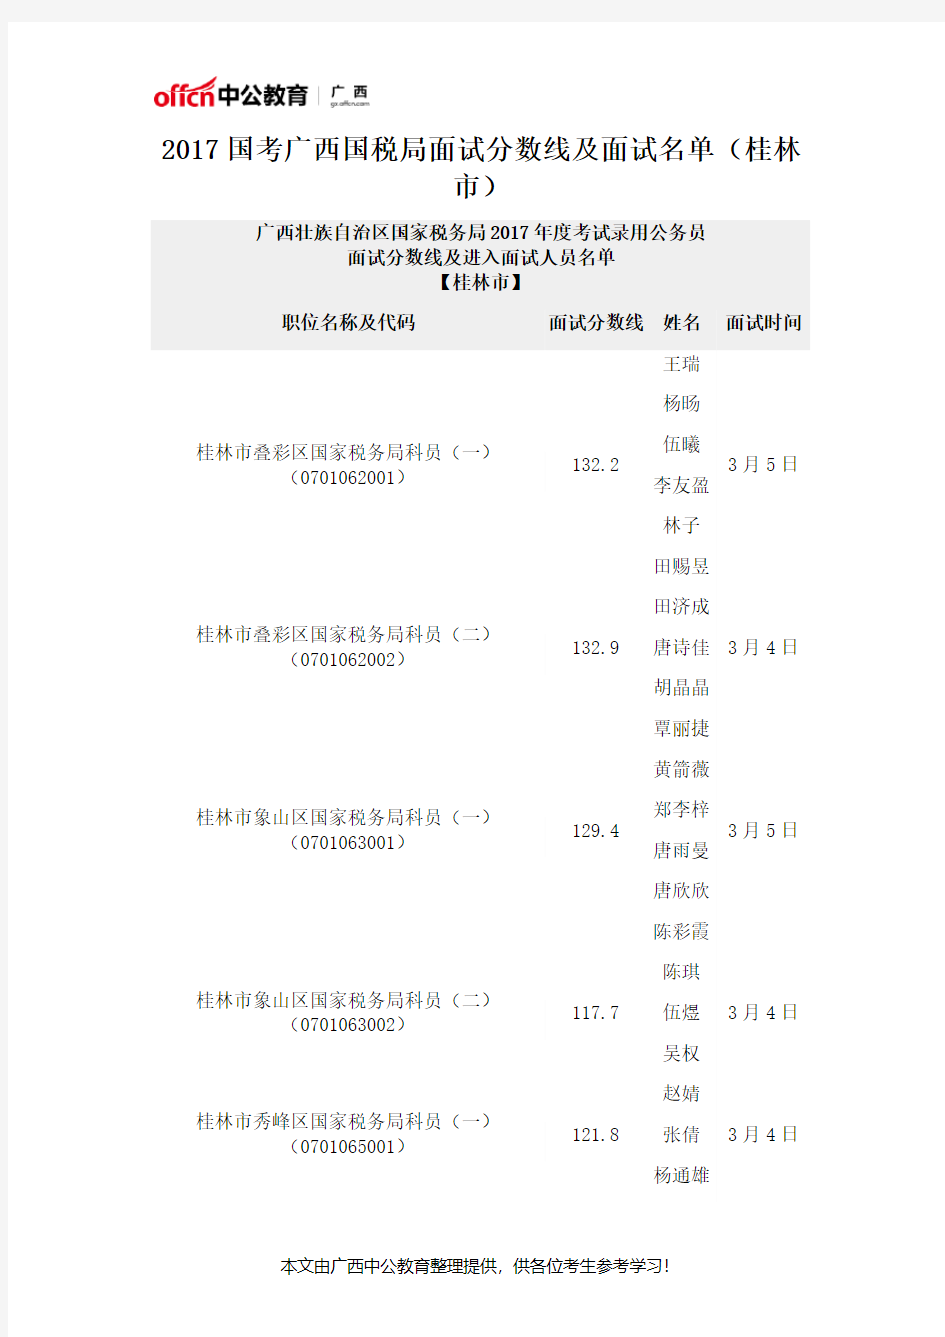 2017国考广西国税局面试分数线及面试名单(桂林市)